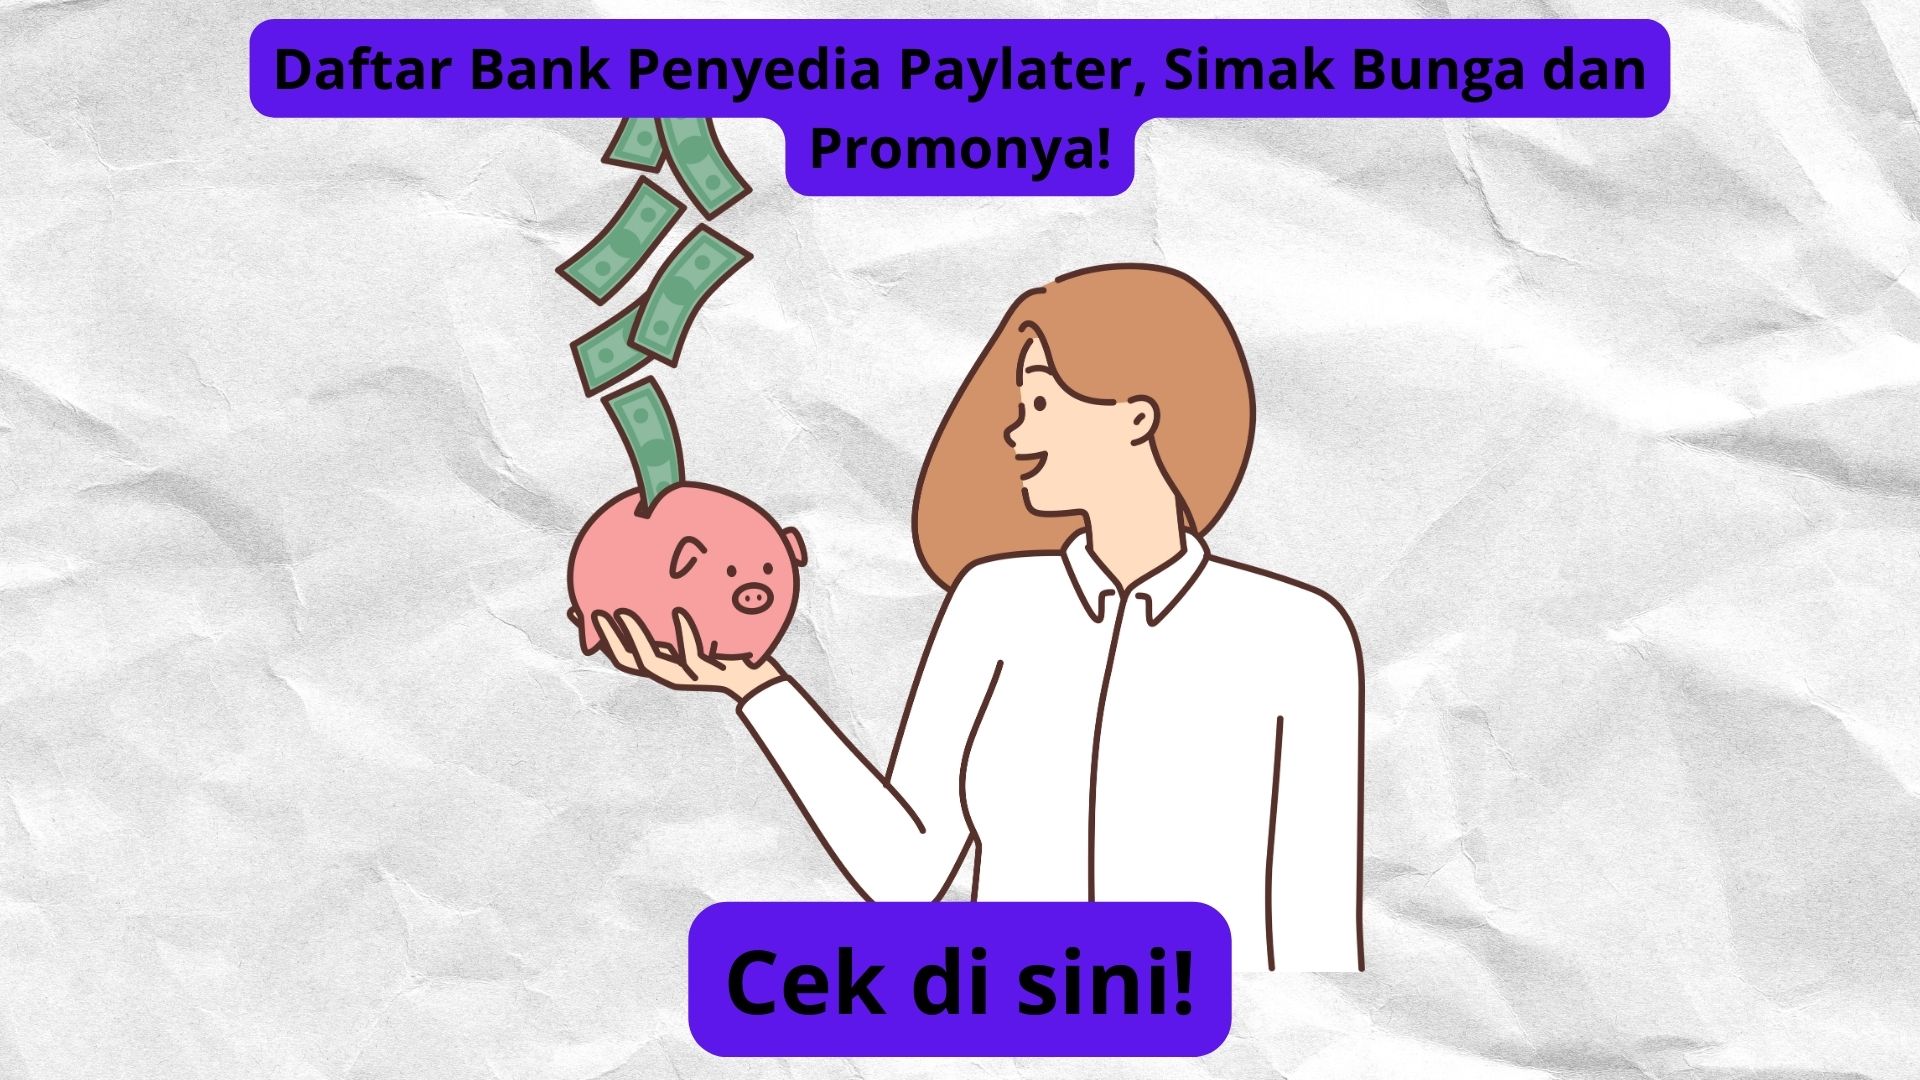 Daftar Bank yang Menyediakan Layanan Paylater, Dapatkan Informasi Terbaru tentang Bunga dan Promonya